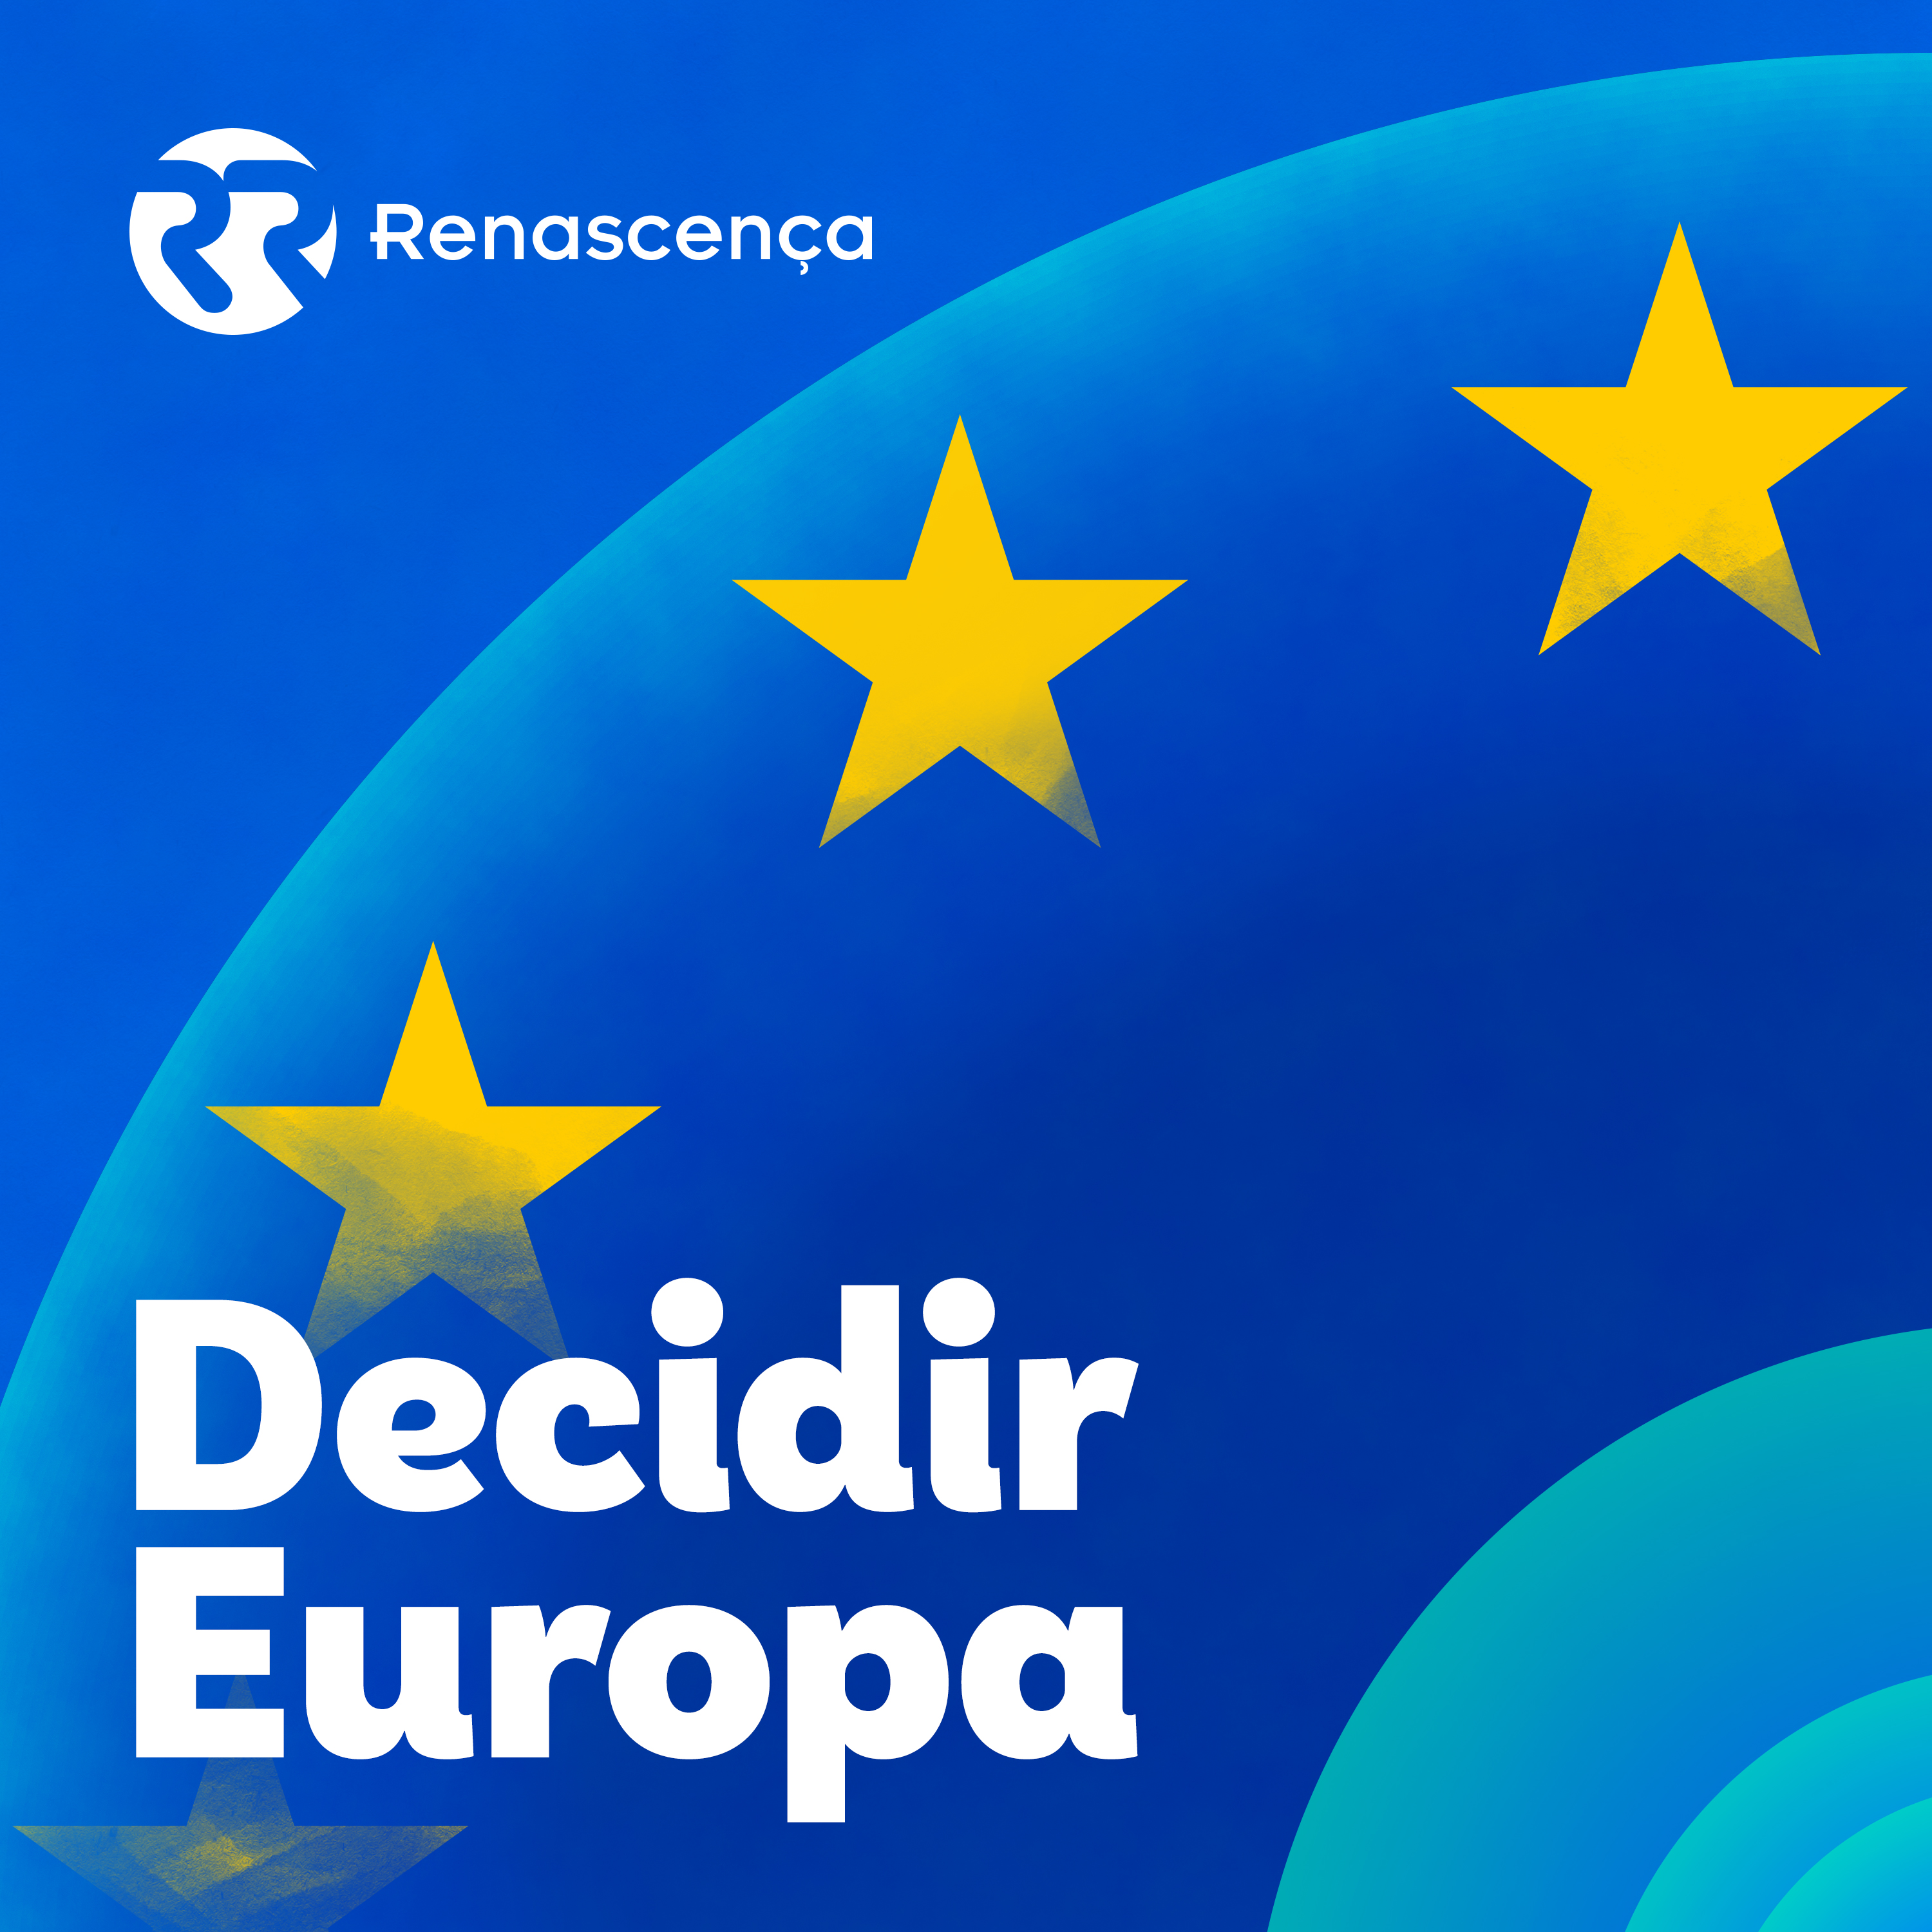 Decidir Europa - António Comprido e o petróleo - 19/03/2021